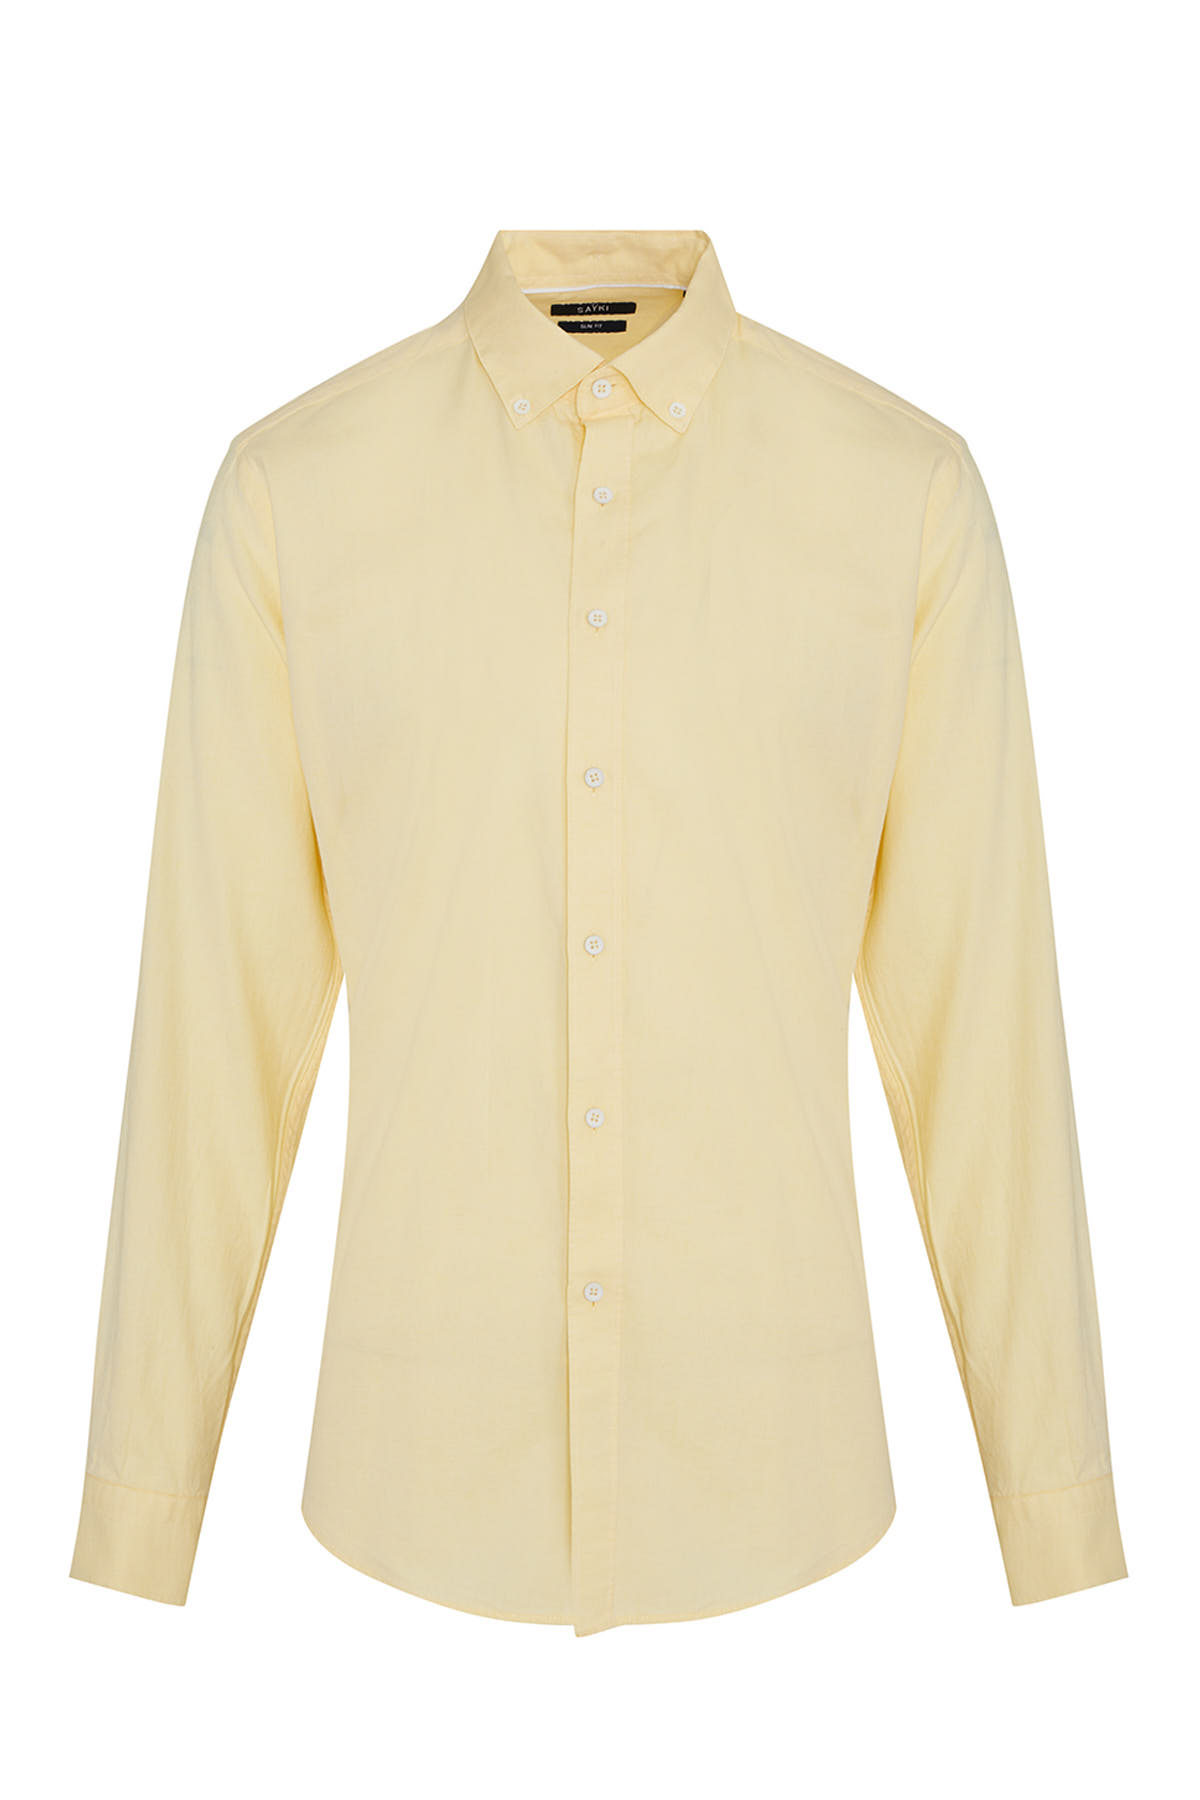 Sarı Slim Fit Düz 100% Pamuk Düğmeli Yaka Uzun Kollu Casual Gömlek